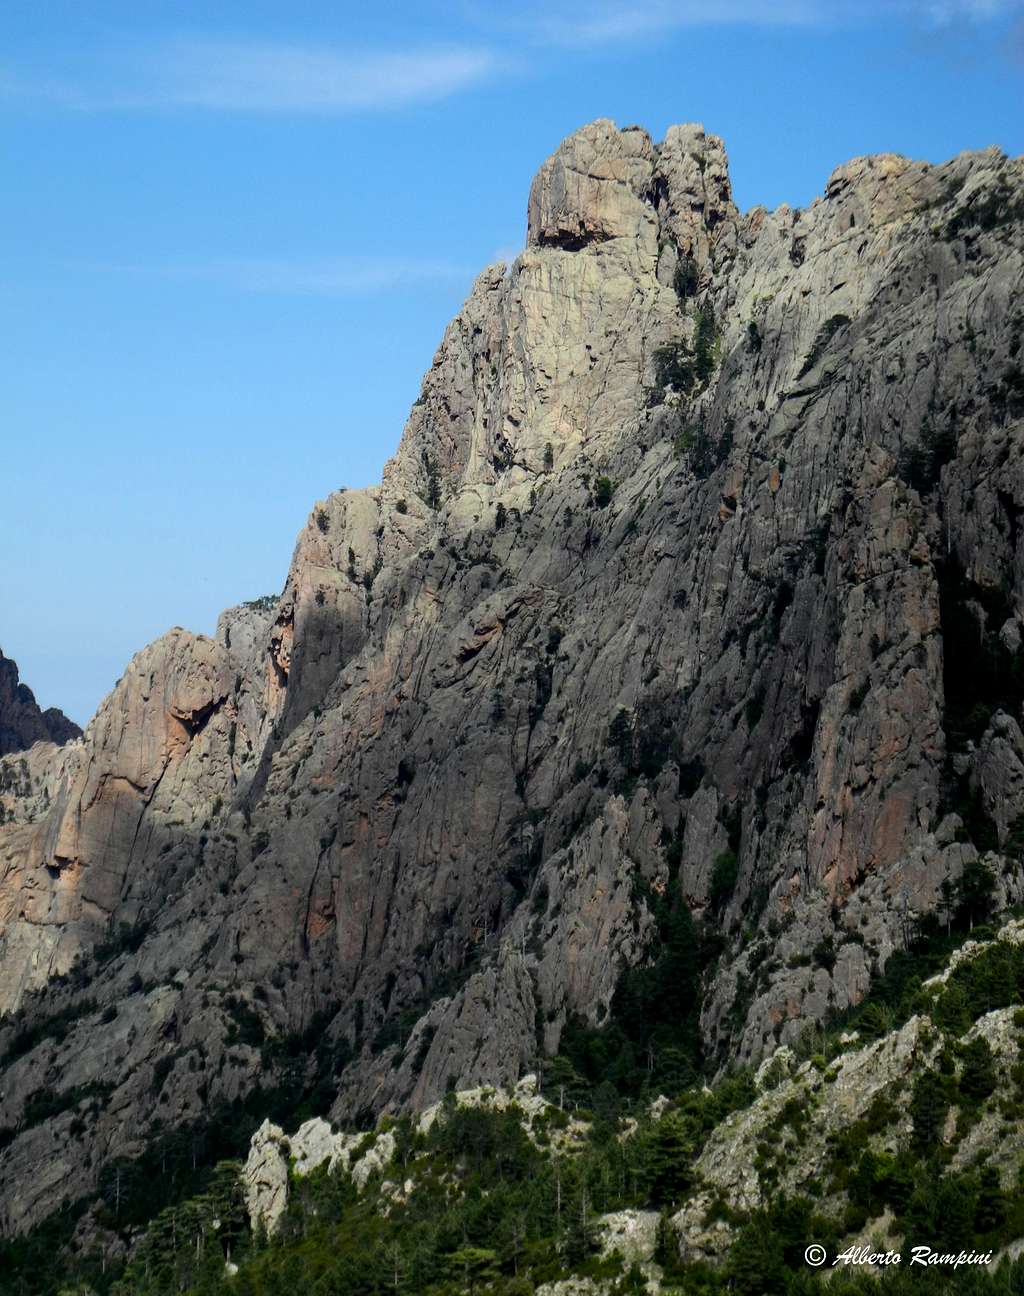 Tafunata di Paliri and Punta Chiapponu, Corsica